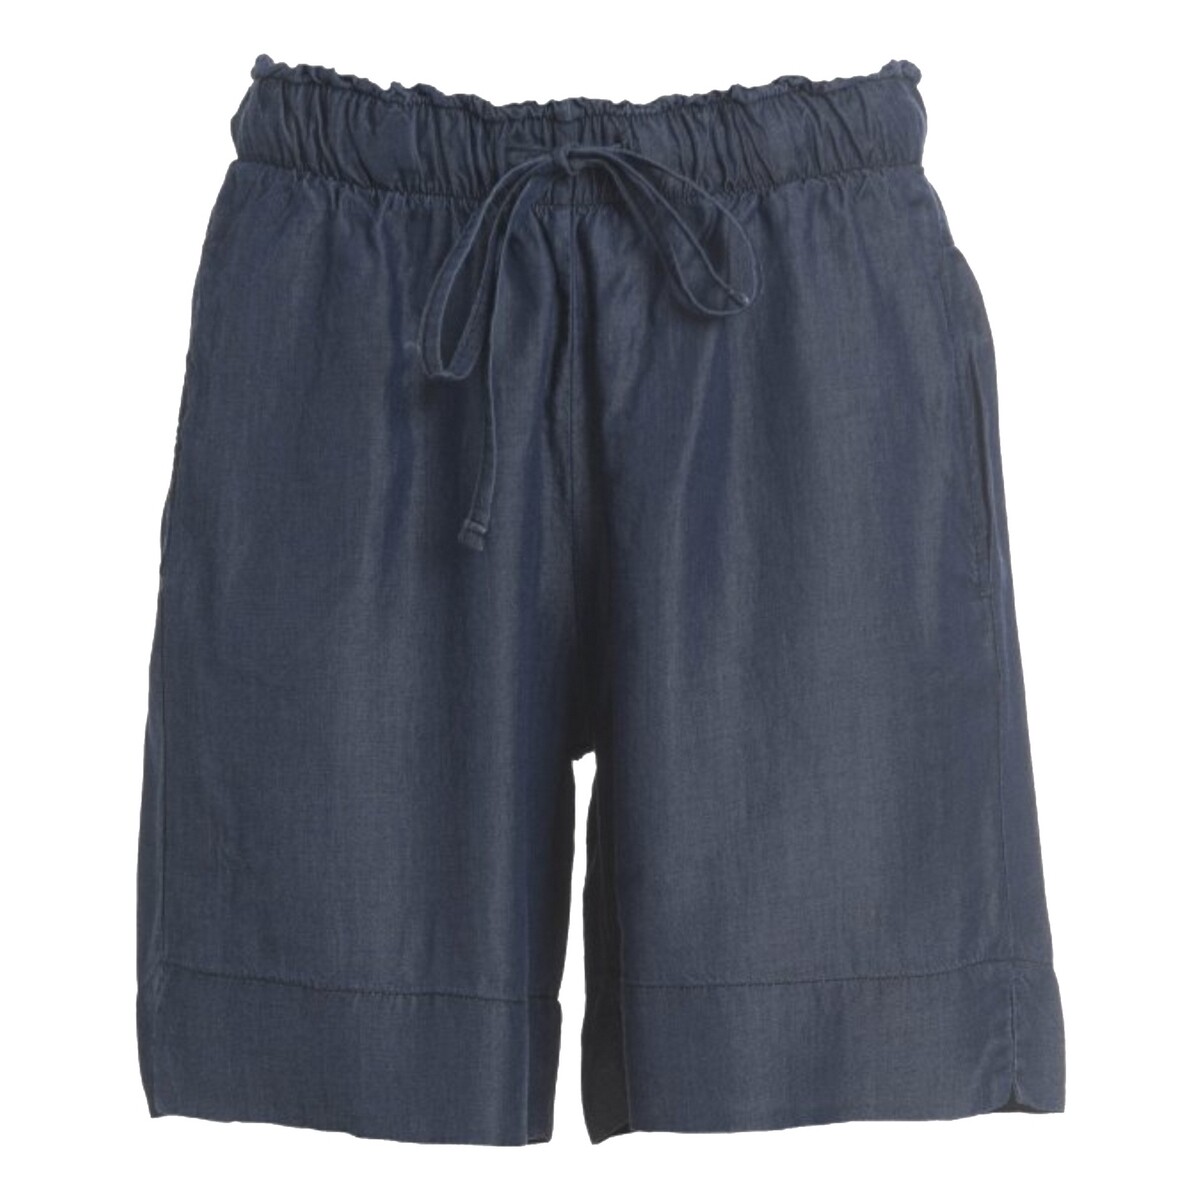 Kleidung Damen Shorts / Bermudas Deha D43167 Blau